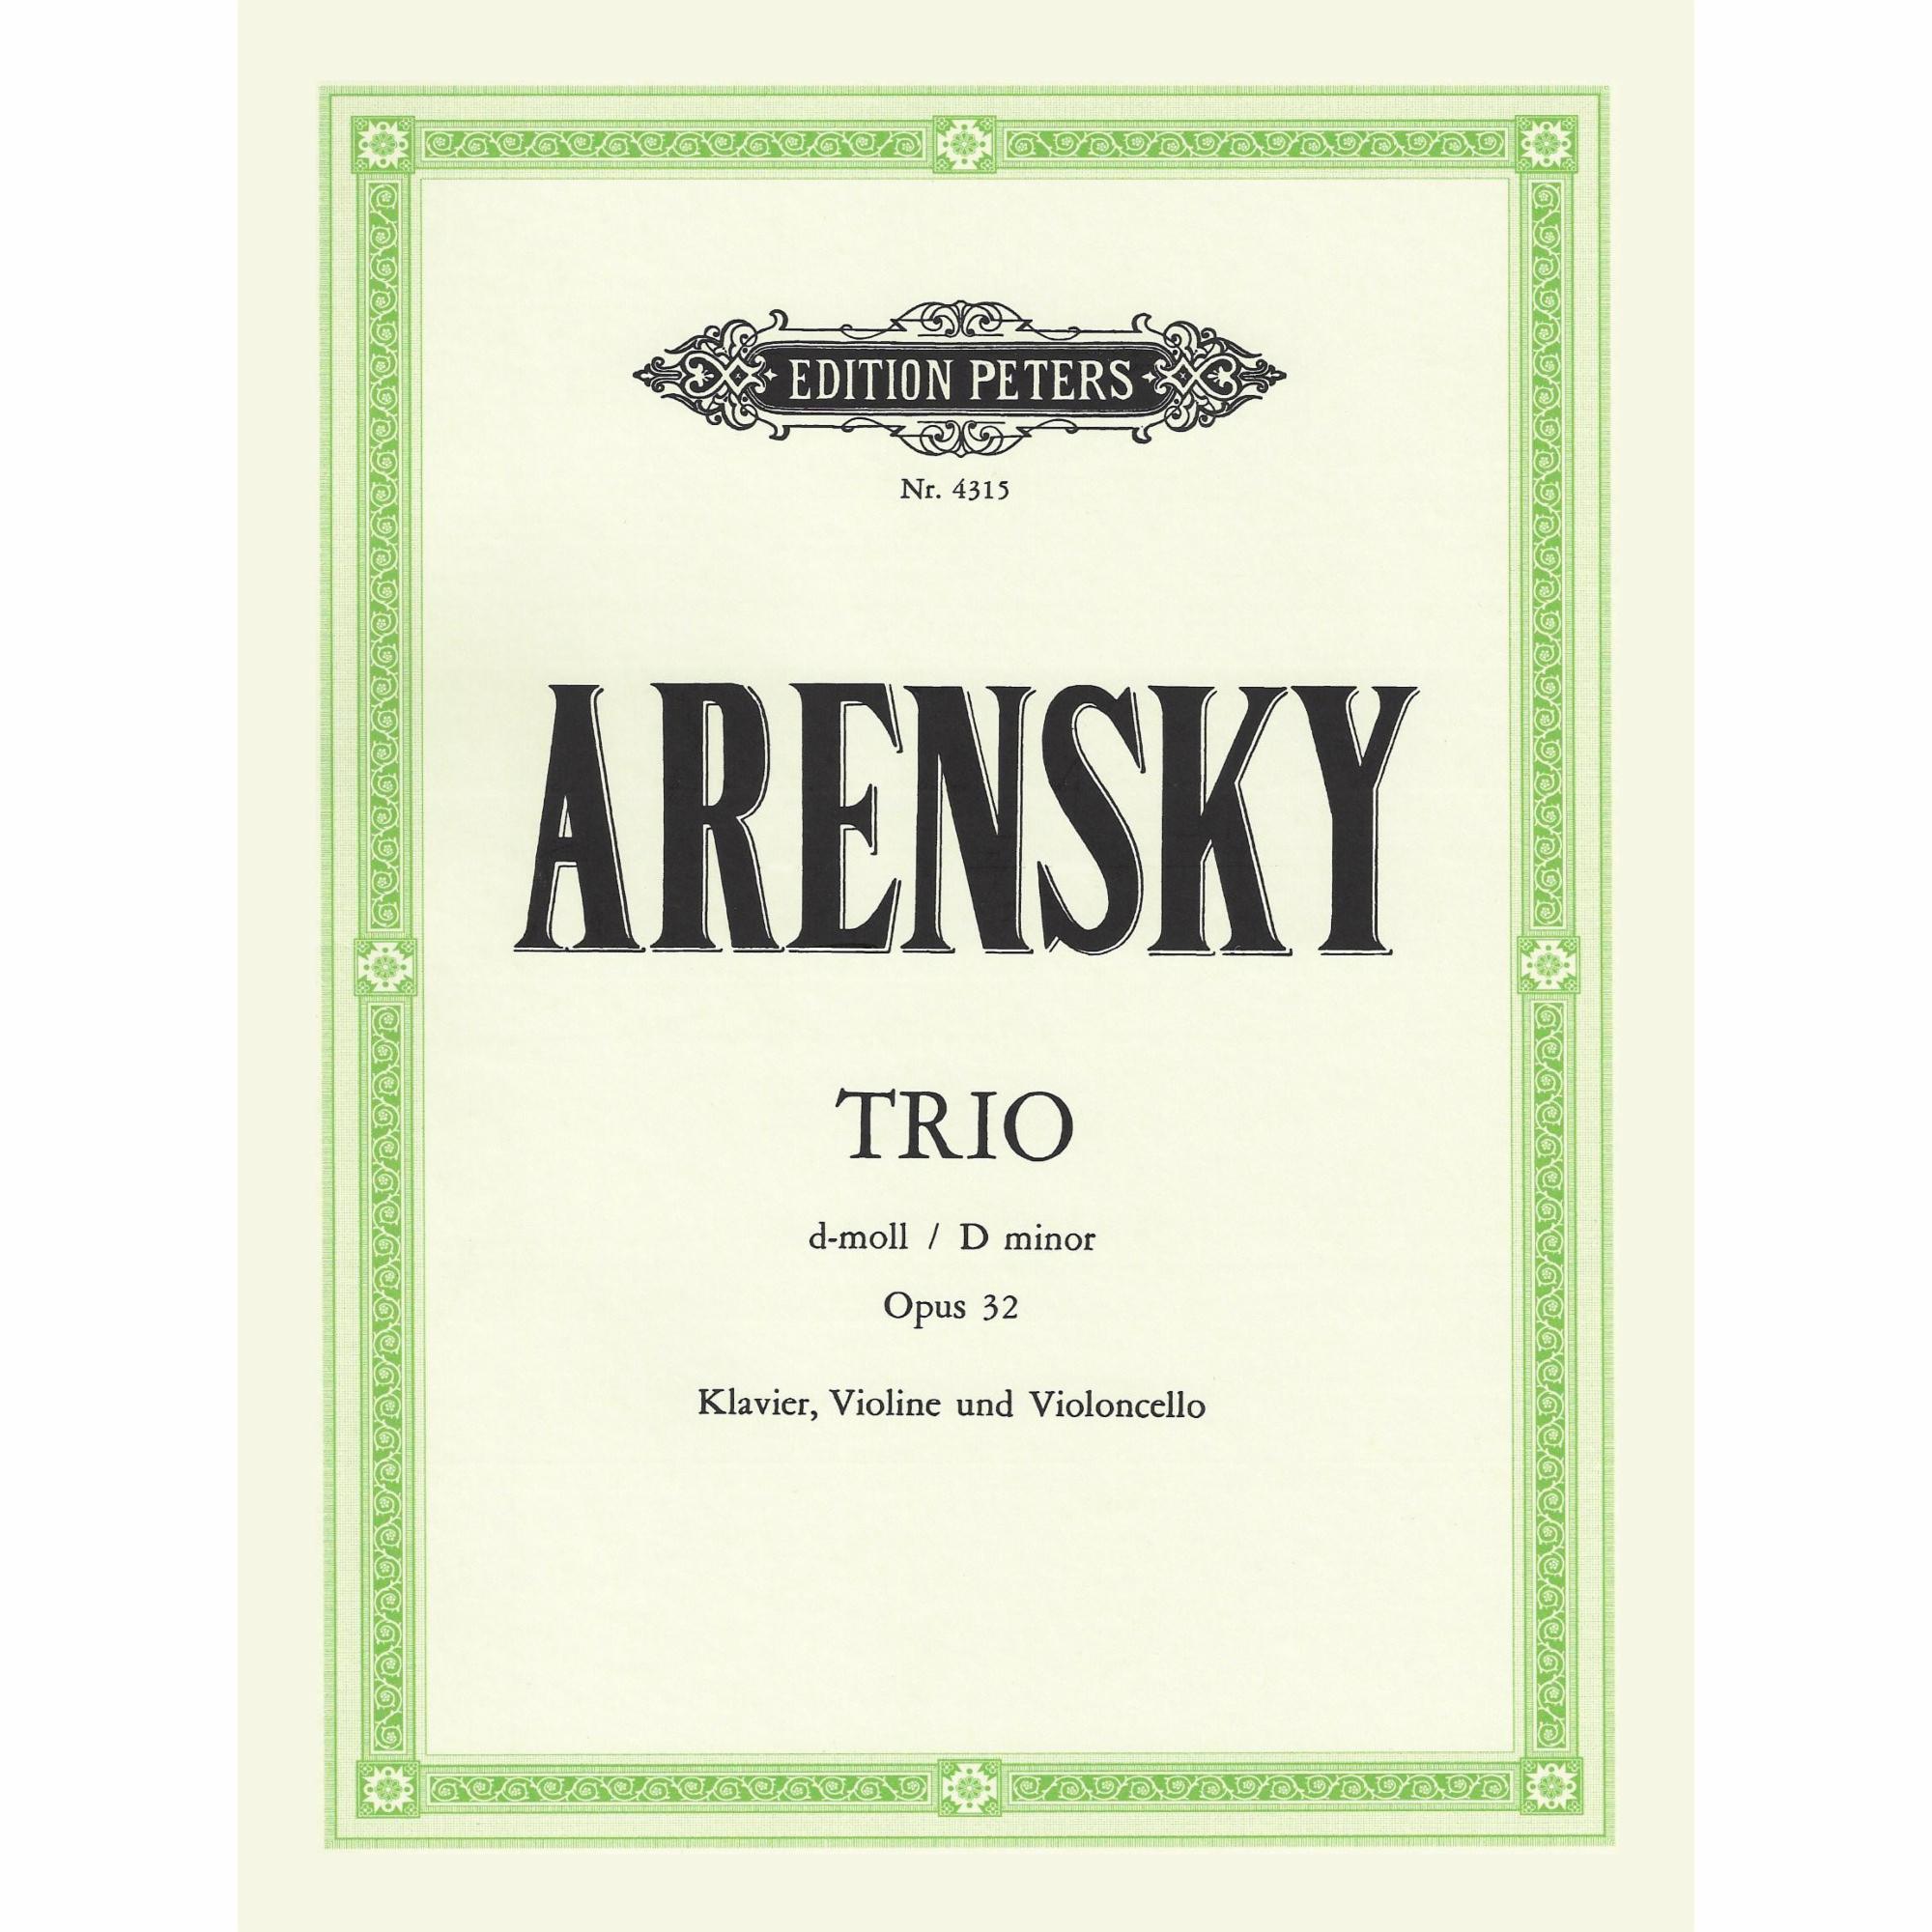 Arensky -- Piano Trio in D Minor, Op. 32